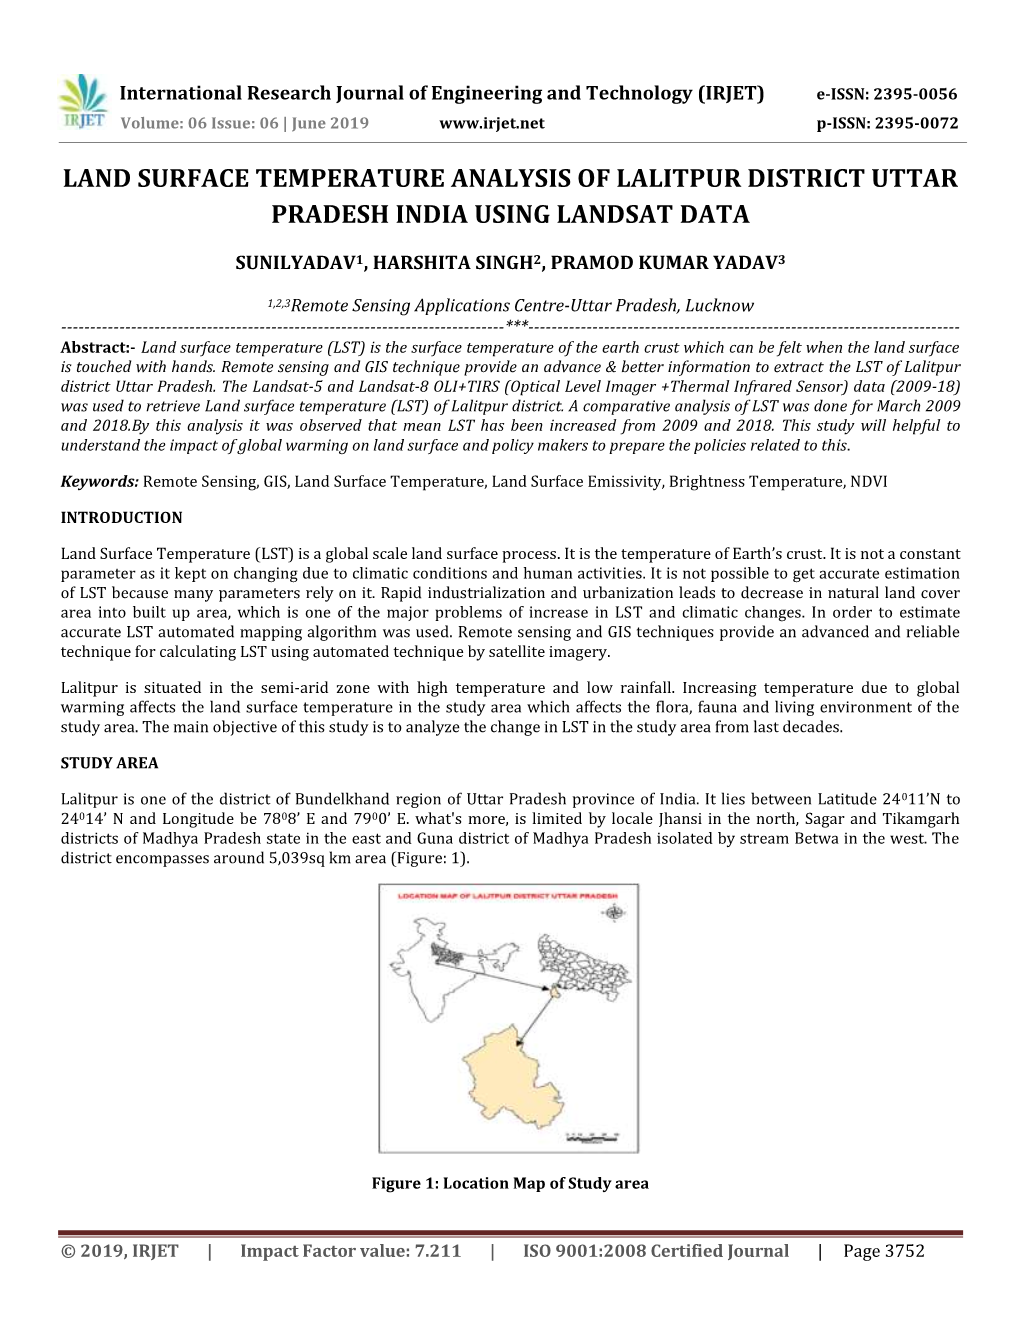 Land Surface Temperature Analysis of Lalitpur District Uttar Pradesh India Using Landsat Data